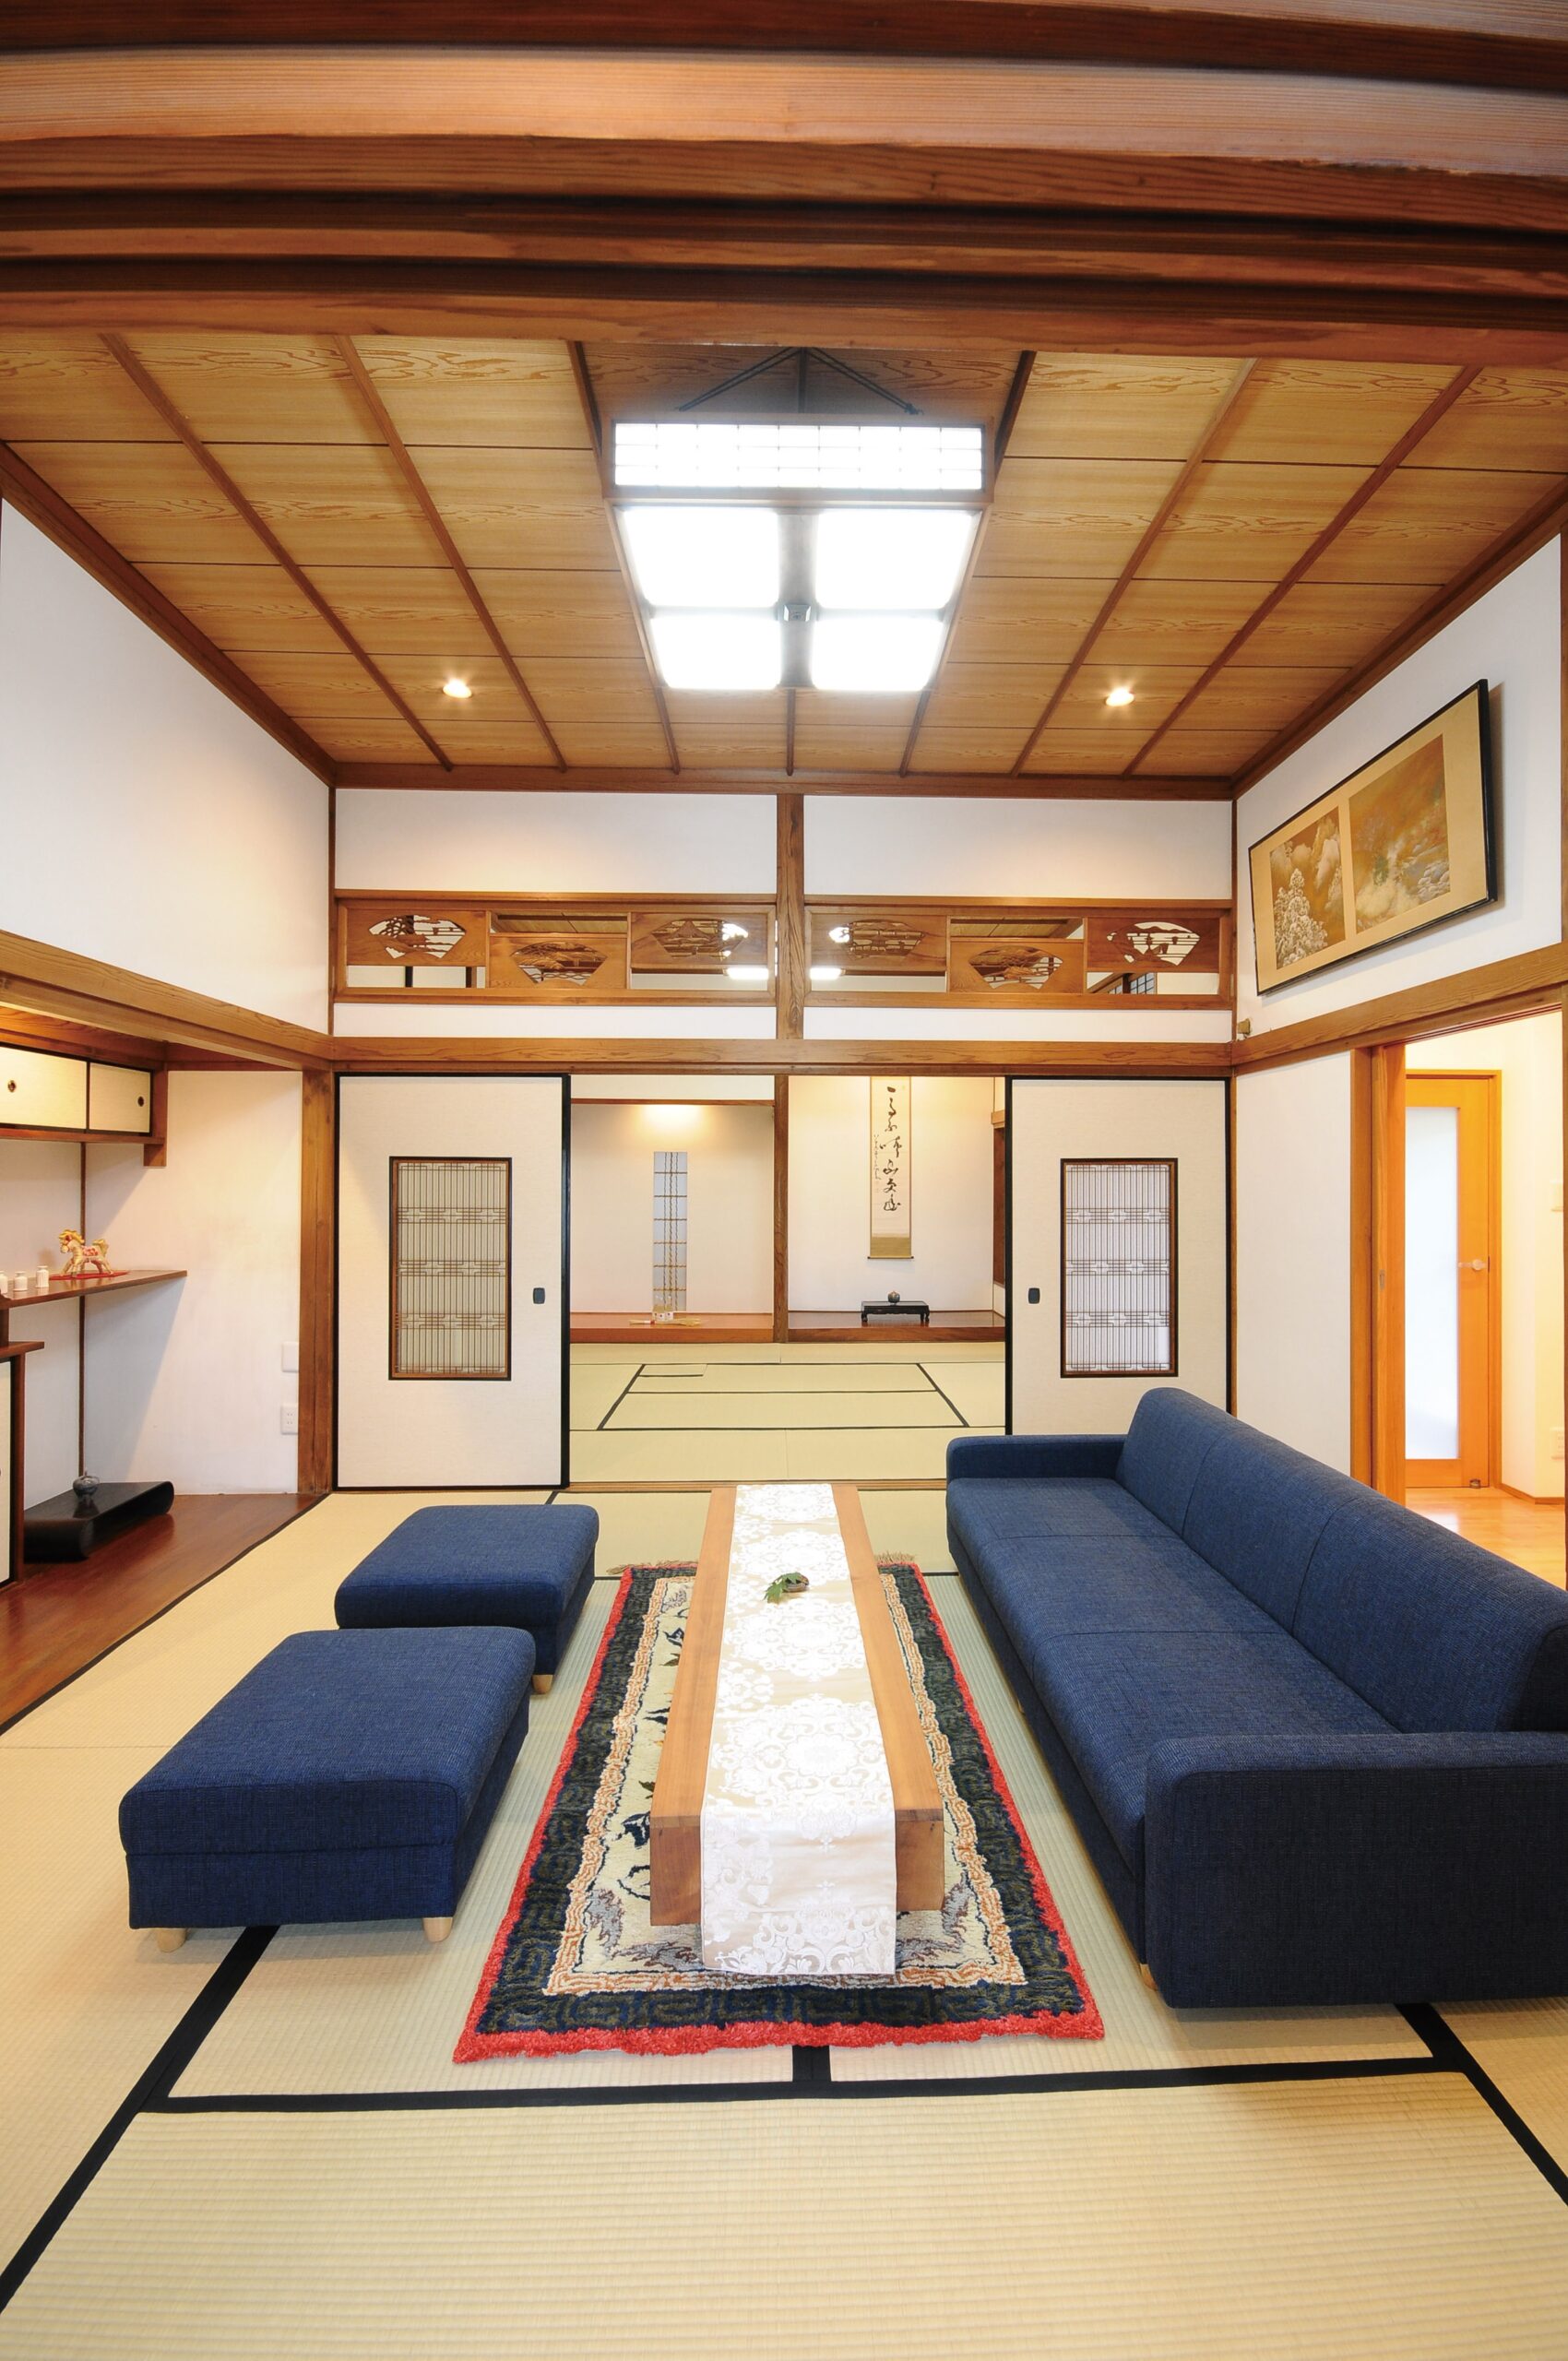 昔の想い出と日本の伝統が残る和室／佐賀市水ケ江 リノベーションモデルハウスReLife 『祖父の思い出を残して集う家』